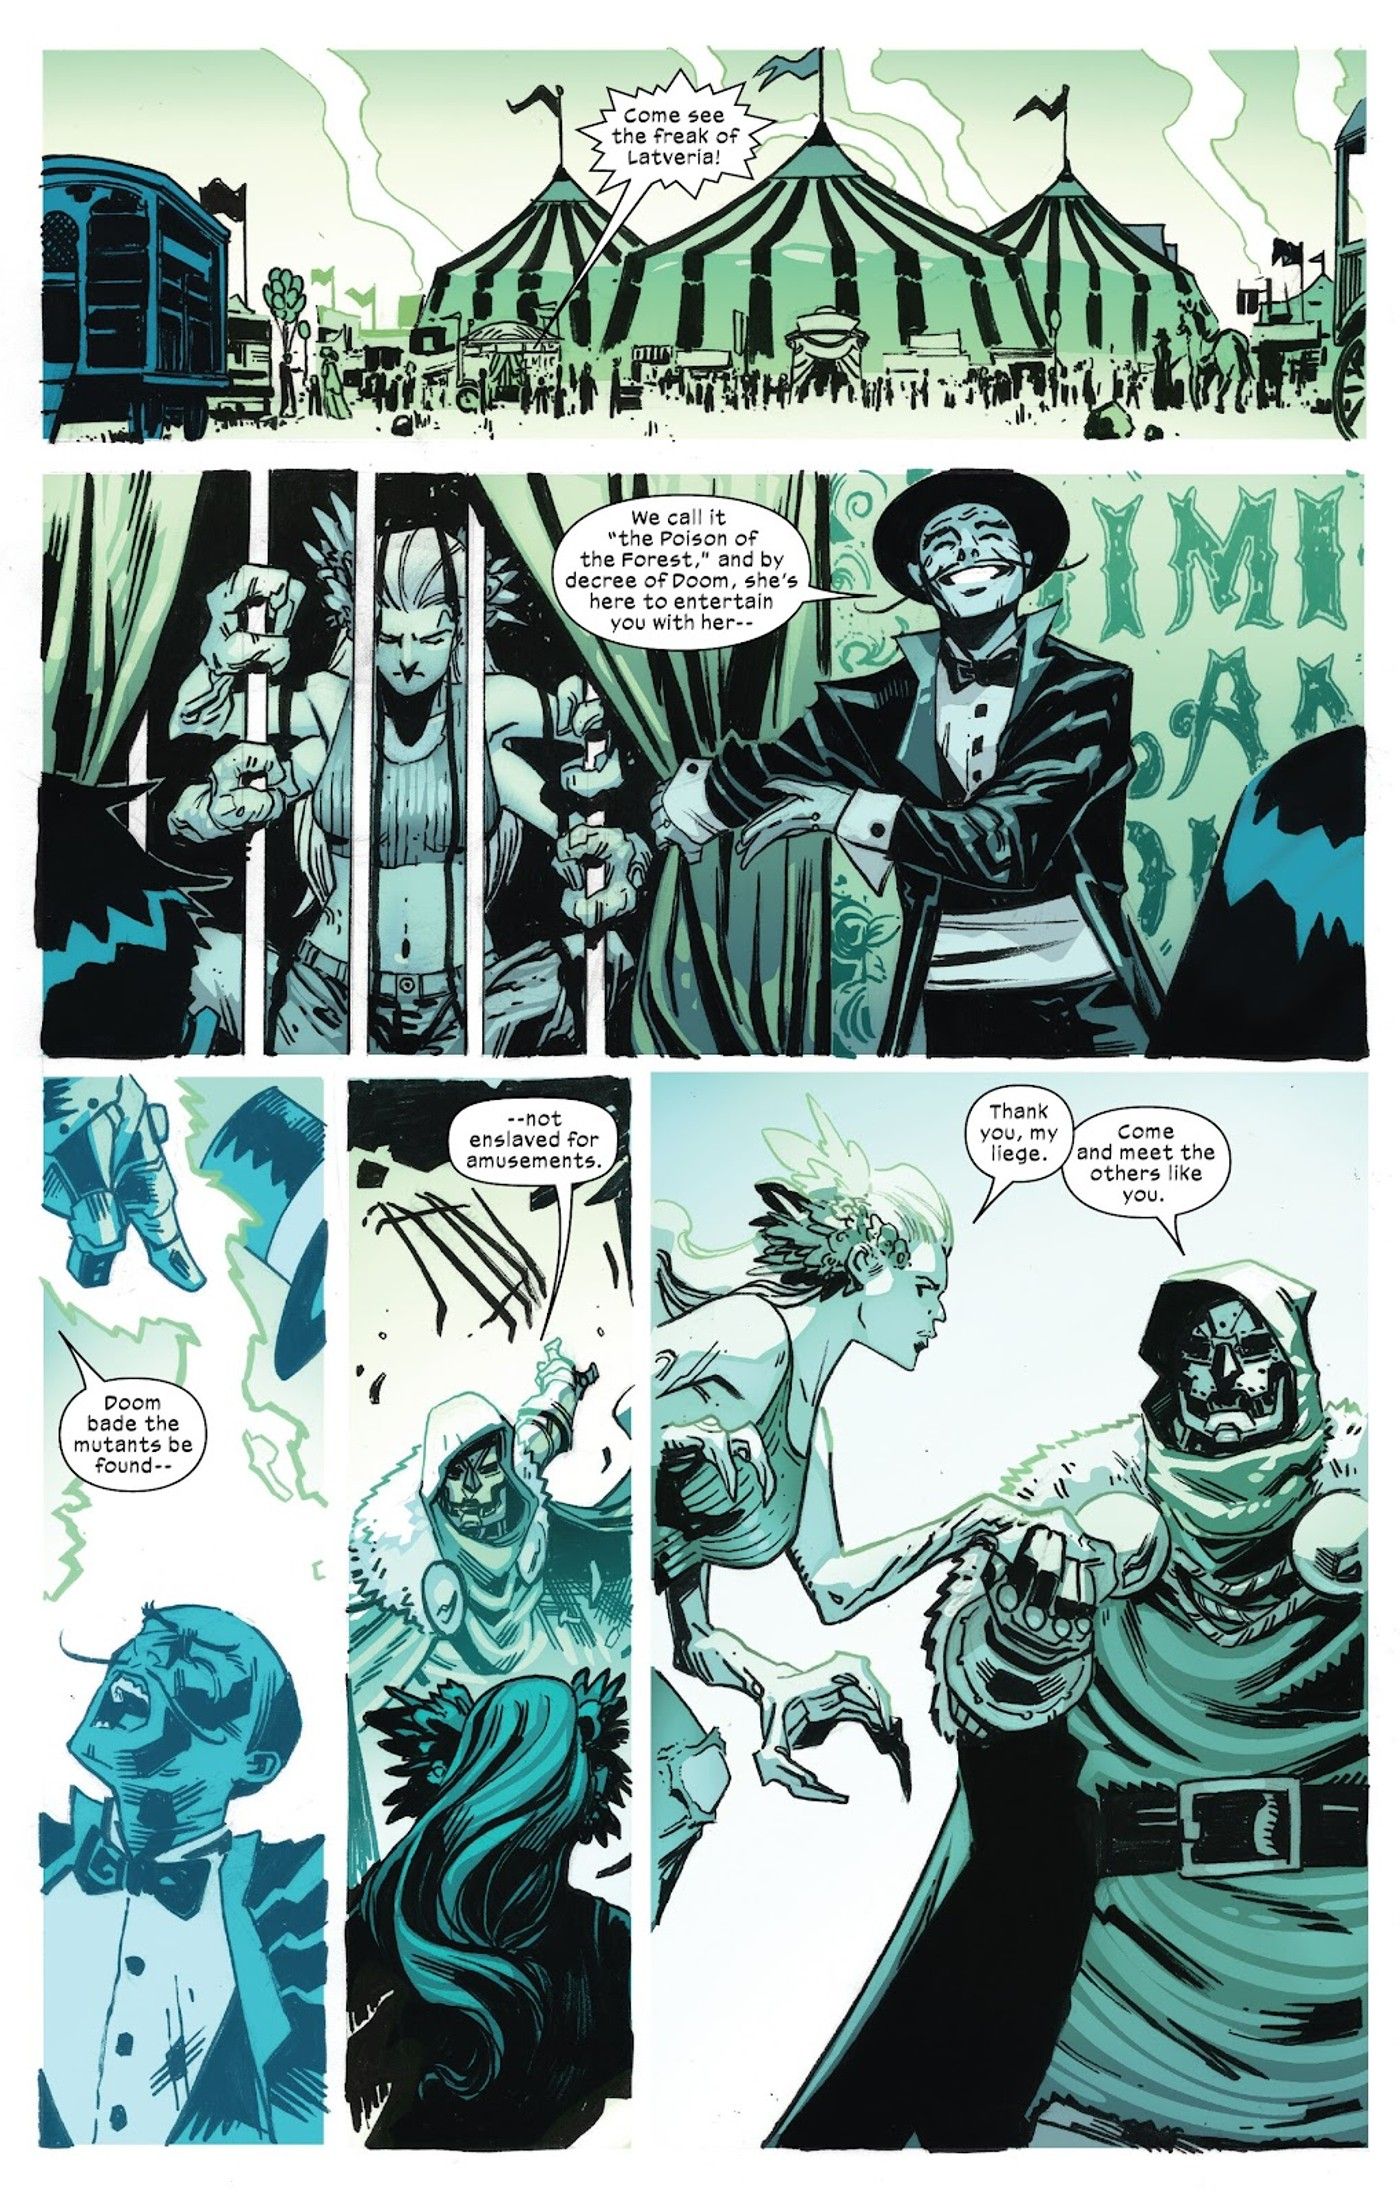 Doctor Doom in X-Men #29, Doctor Doom recruits Nerium for his mutant squad